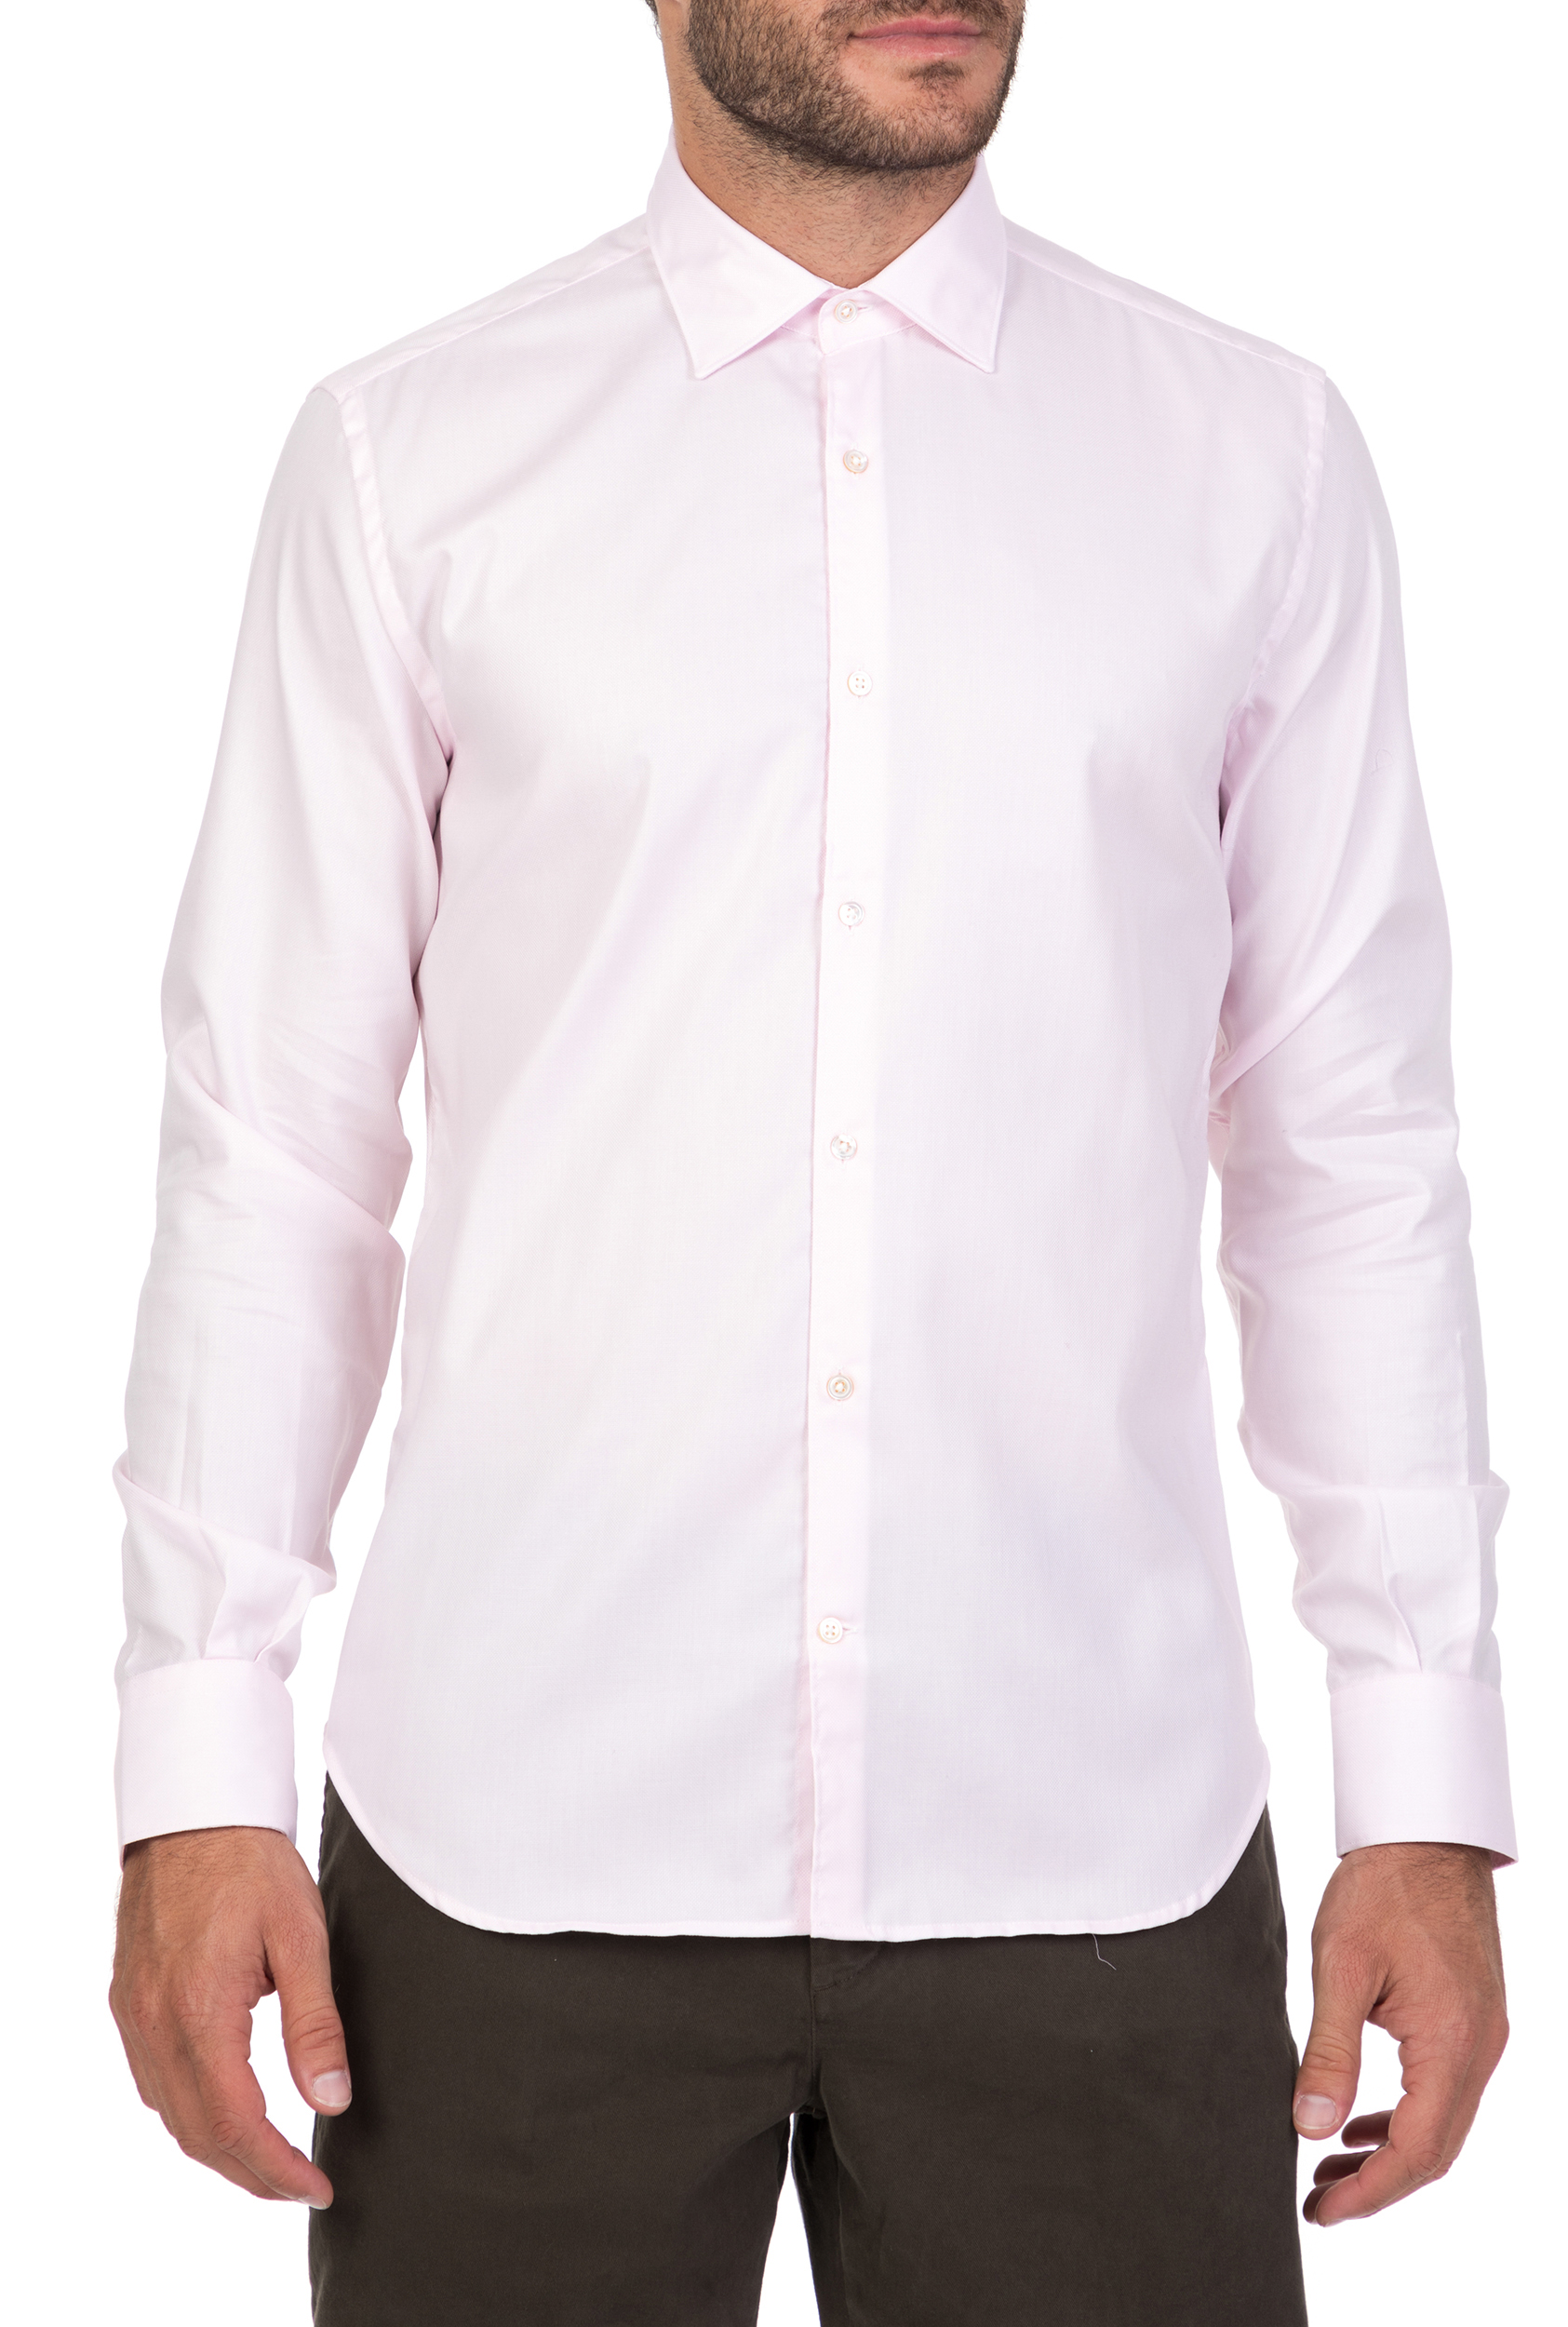 Ανδρικά/Ρούχα/Πουκάμισα/Μακρυμάνικα BROOKSFIELD - Ανδρικό μακρυμάνικο πουκάμισο BROOKSFIELD ροζ